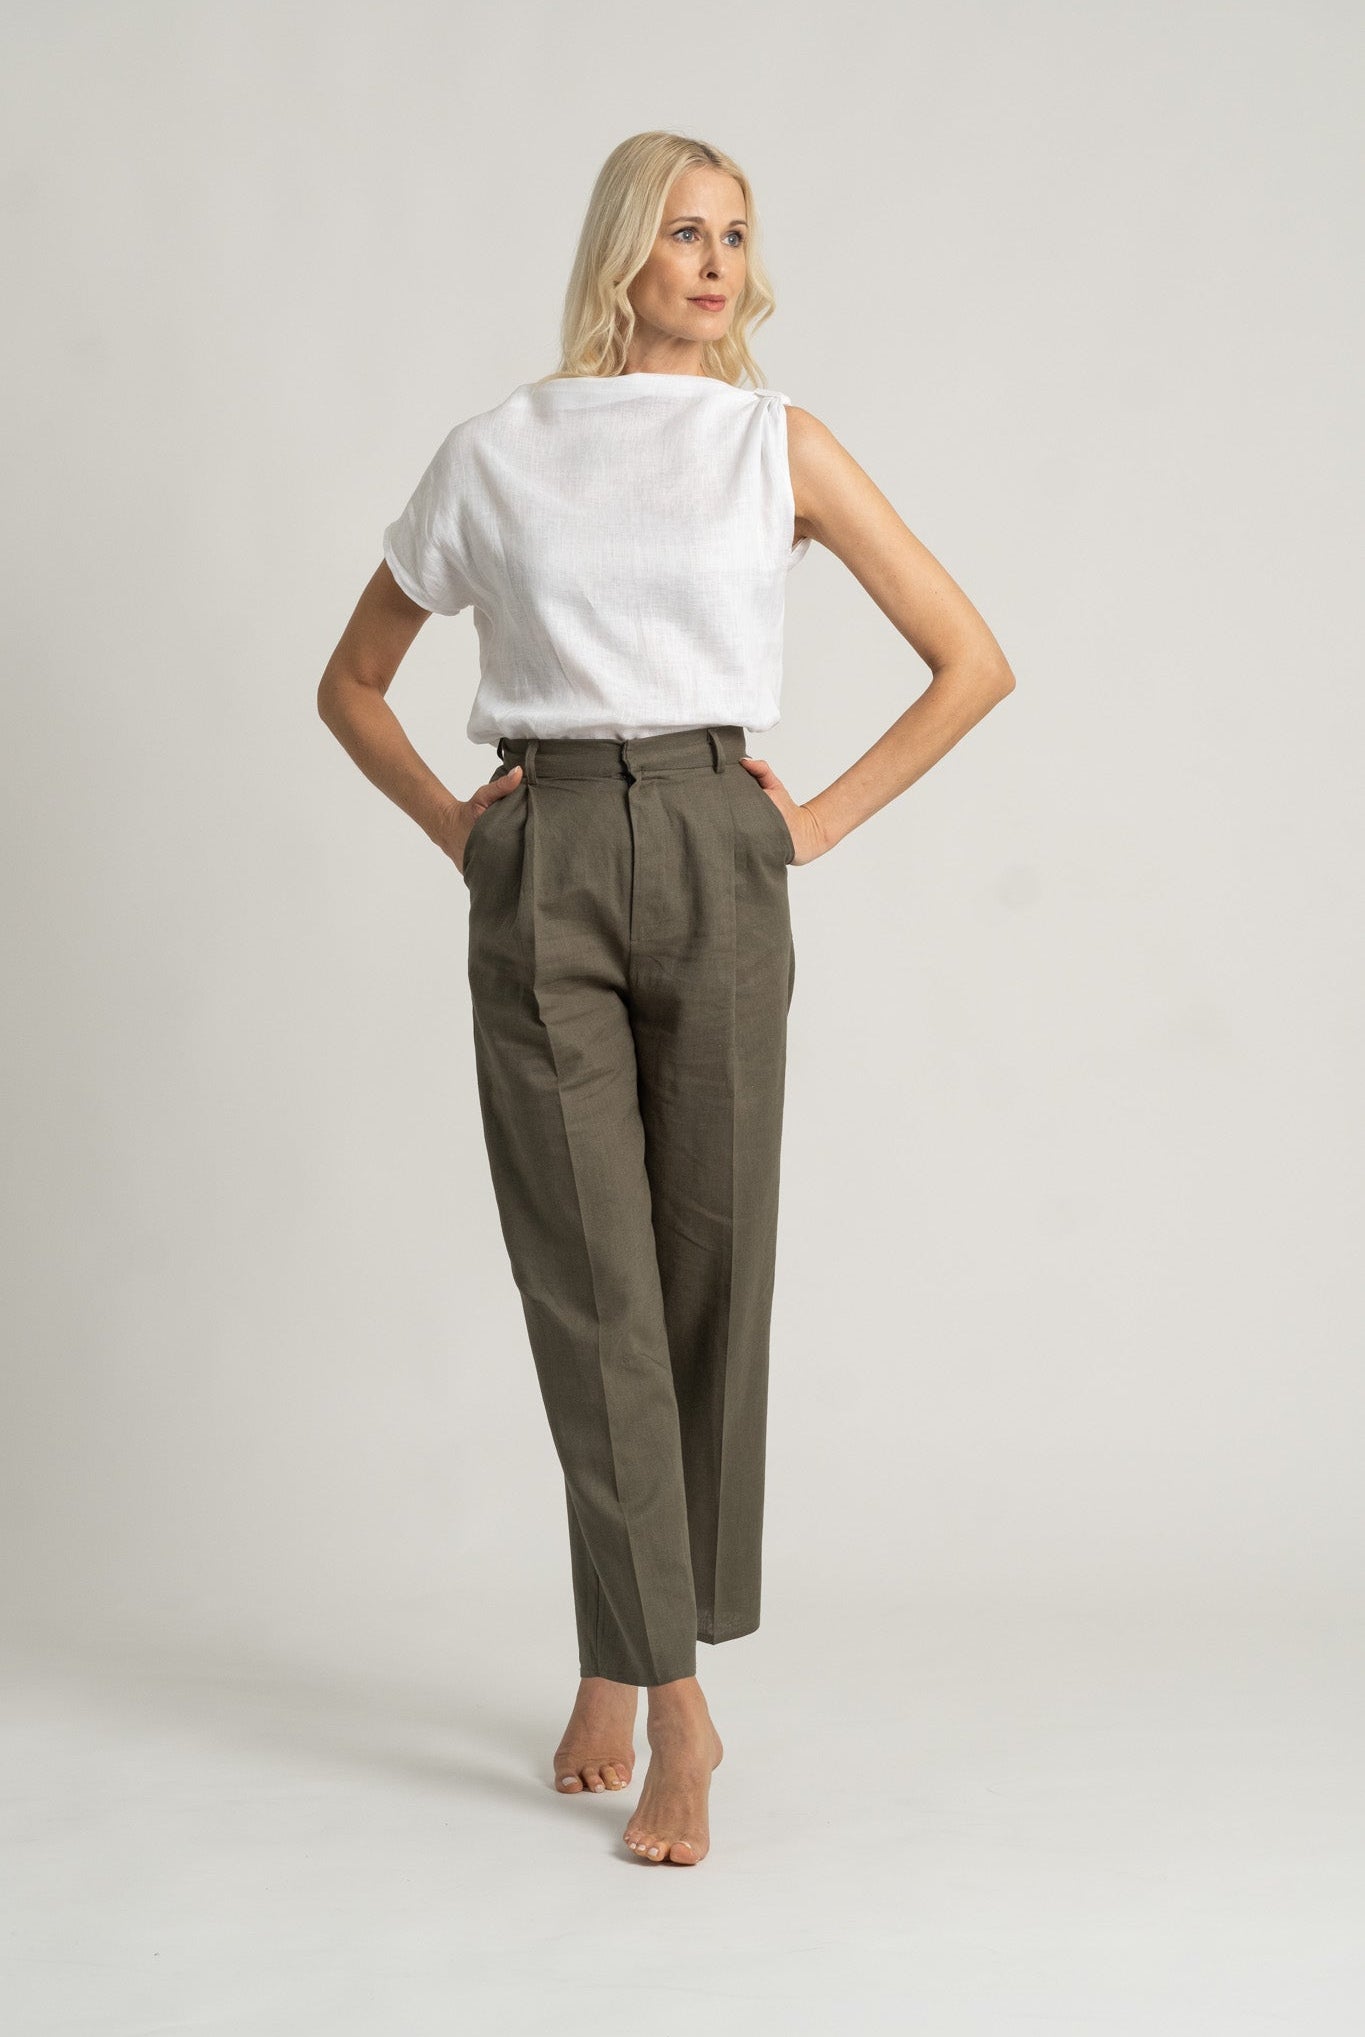 4 Ways To Style White Linen Pants - Vida Fashionista